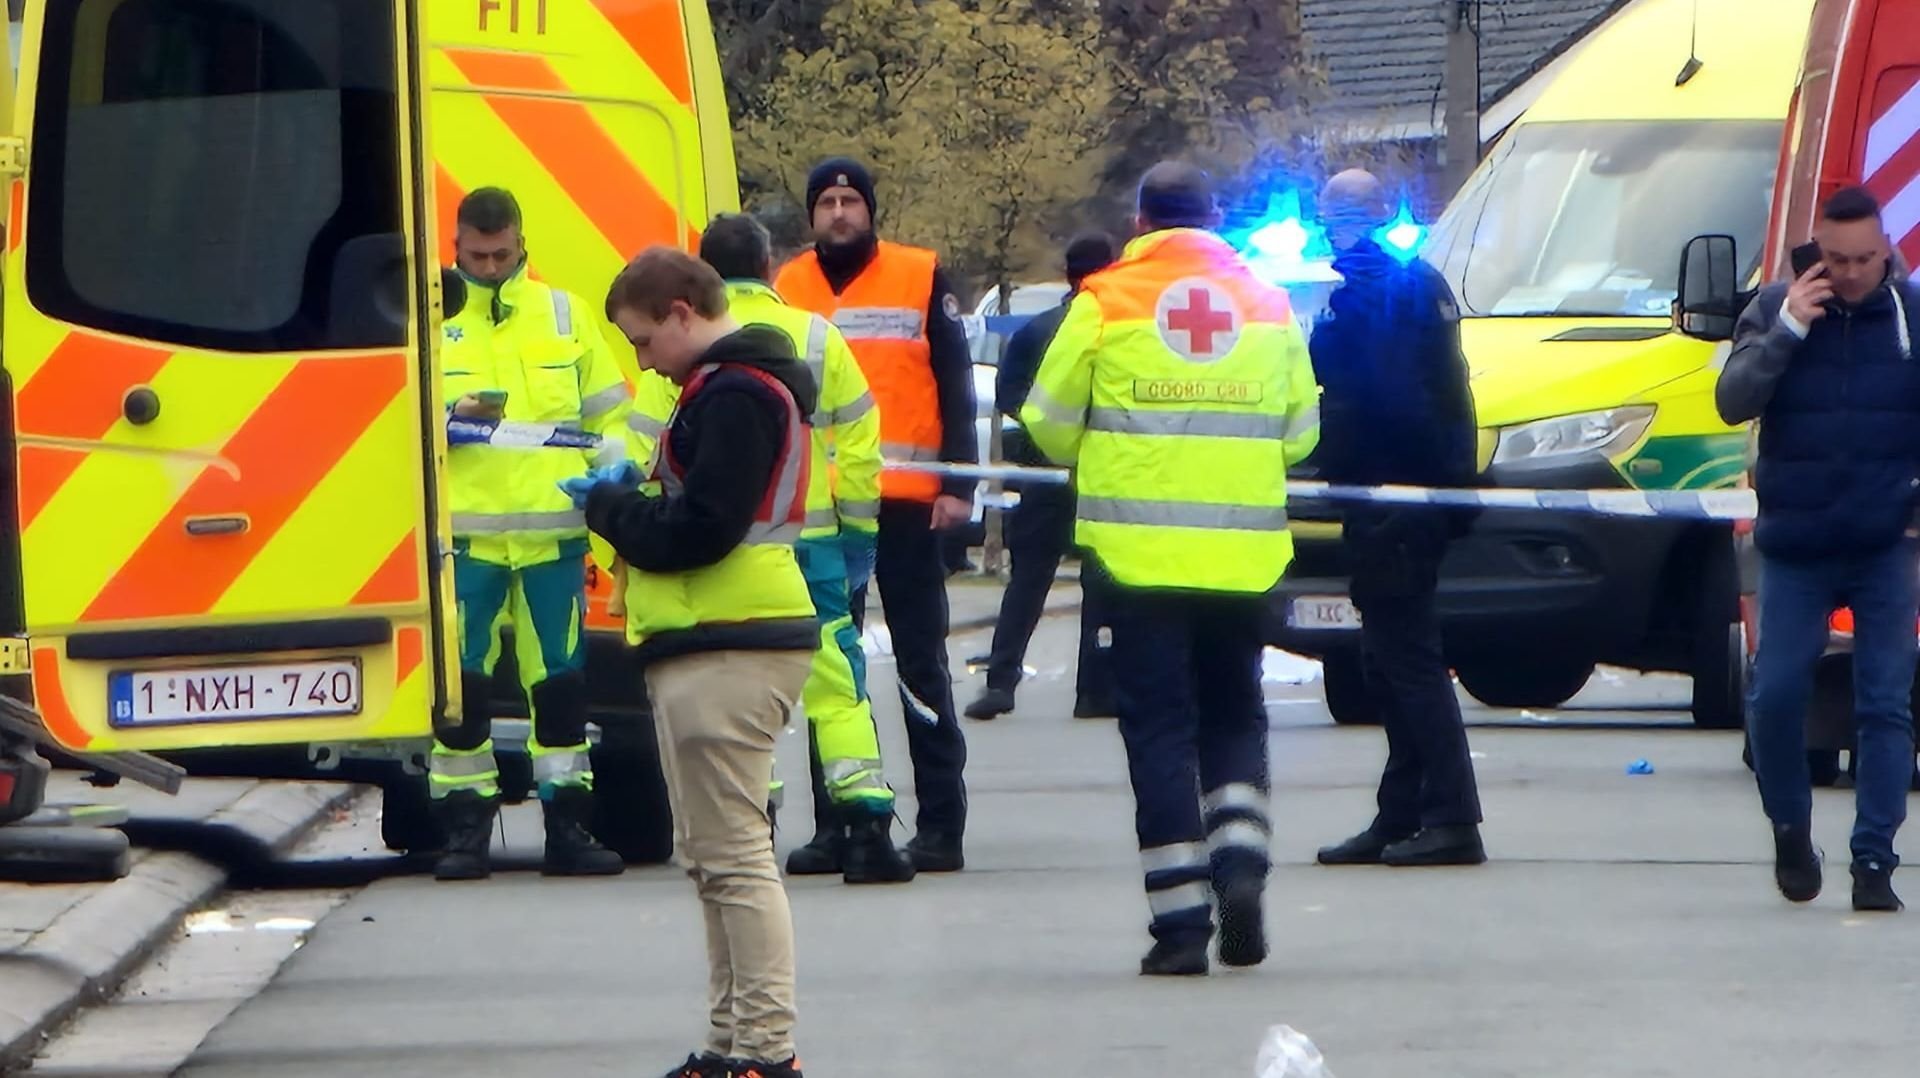  Patru persoane au murit după ce o maşină a intrat în mulţimea care participa la un carnaval în Belgia